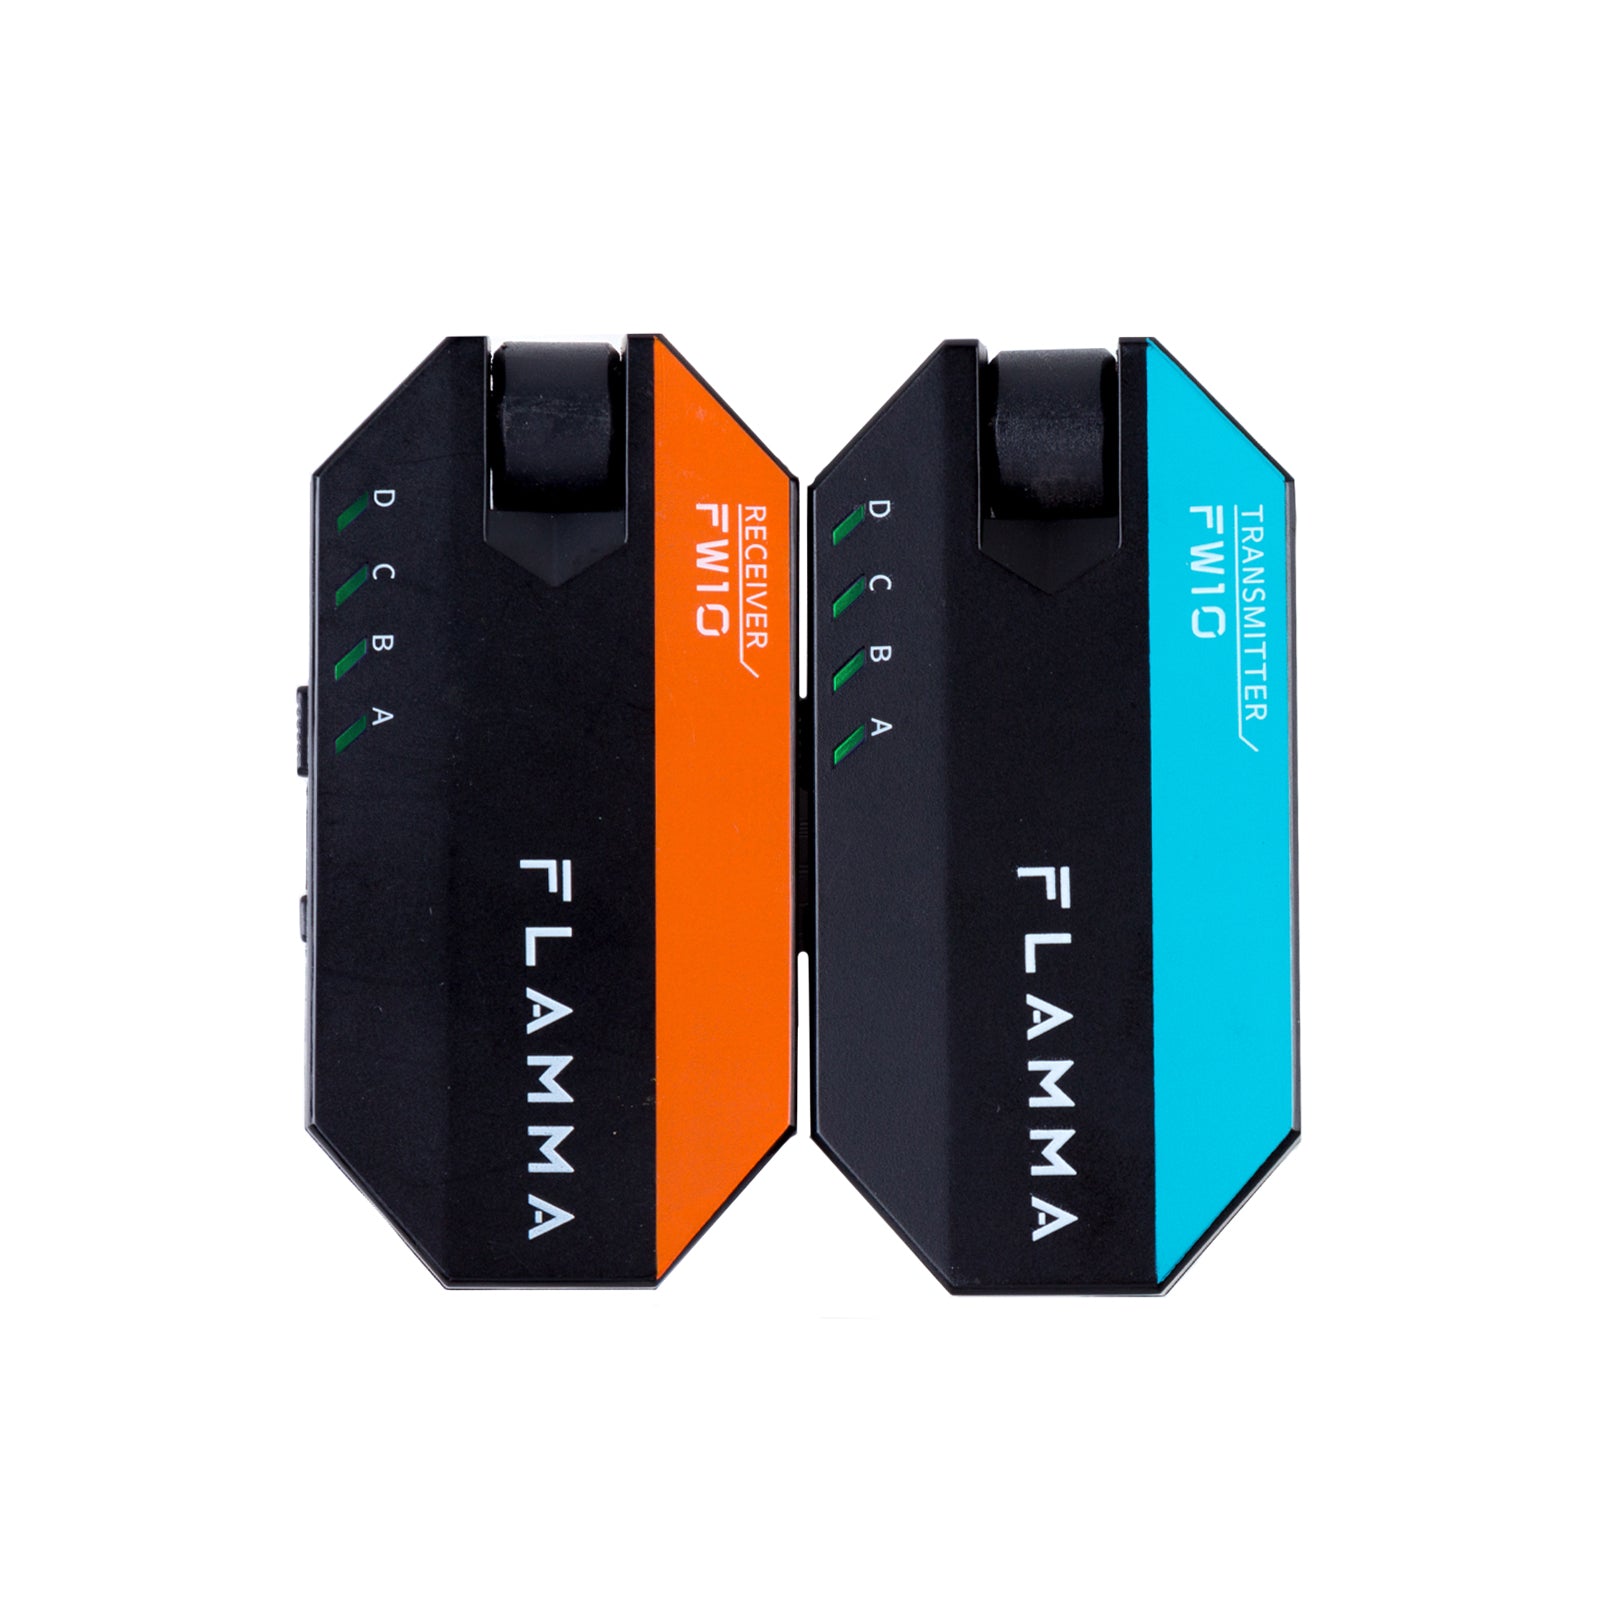 FLAMMA FW10 Plug to Use Wireless Guitar Wireless System – Flamma Innovation